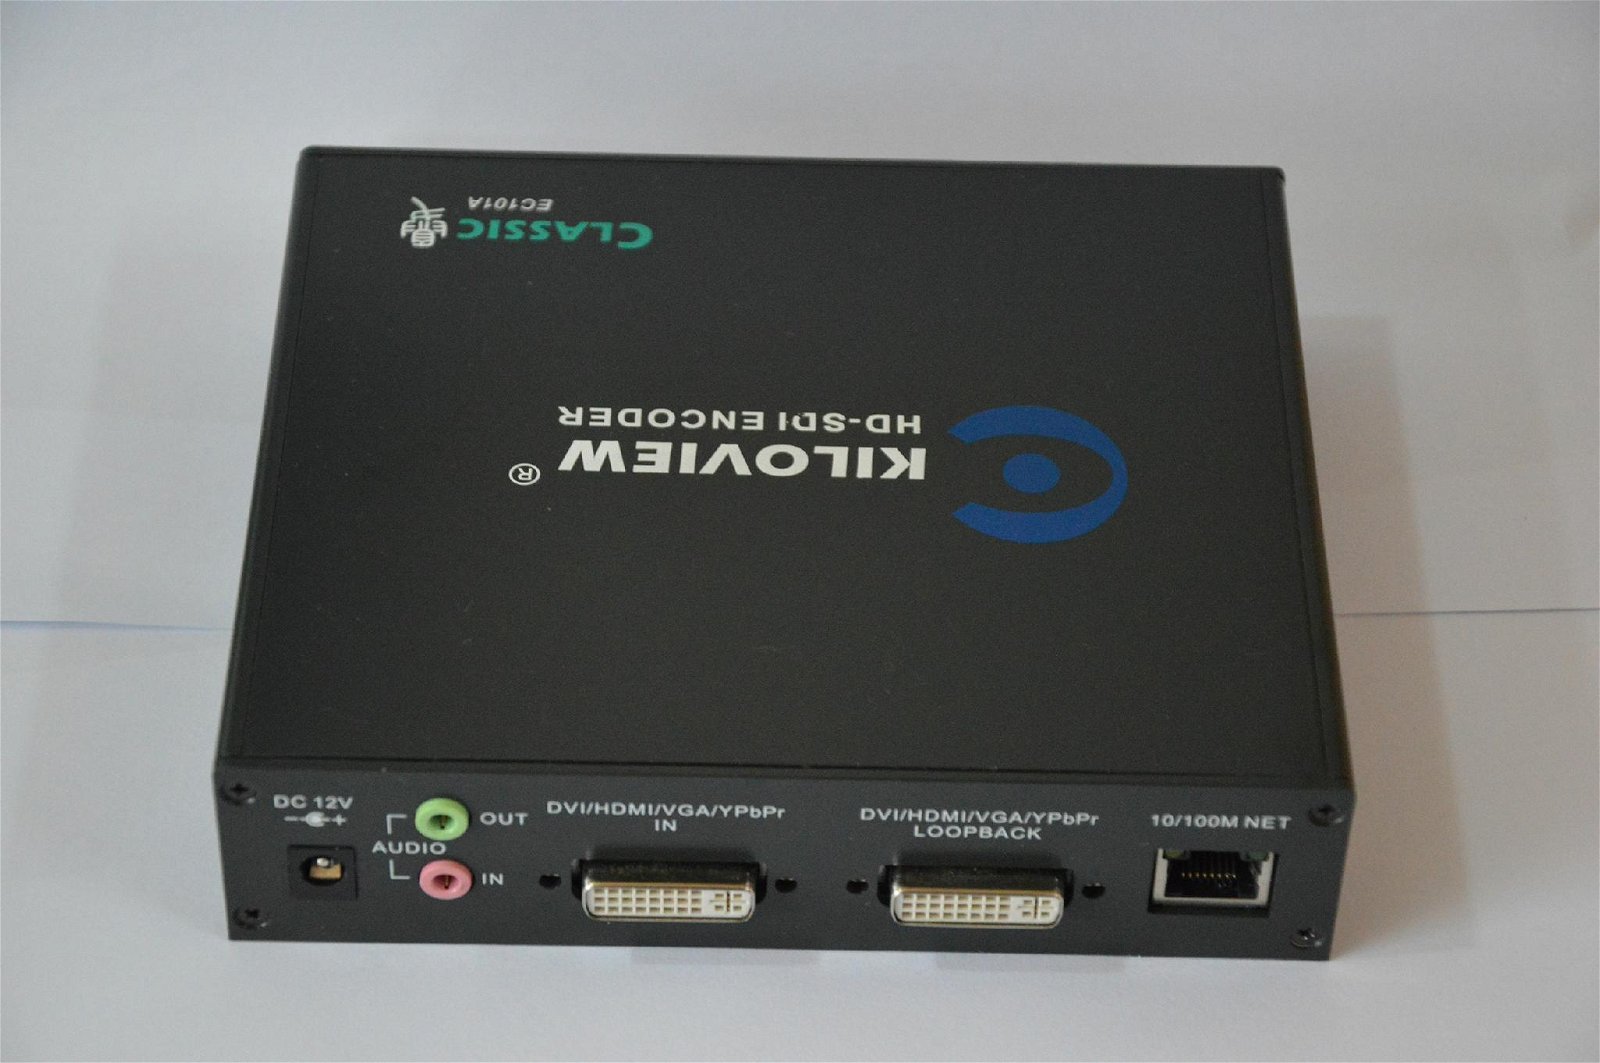 SD/HD-SDI高清视频编码器广播级工厂直供 5